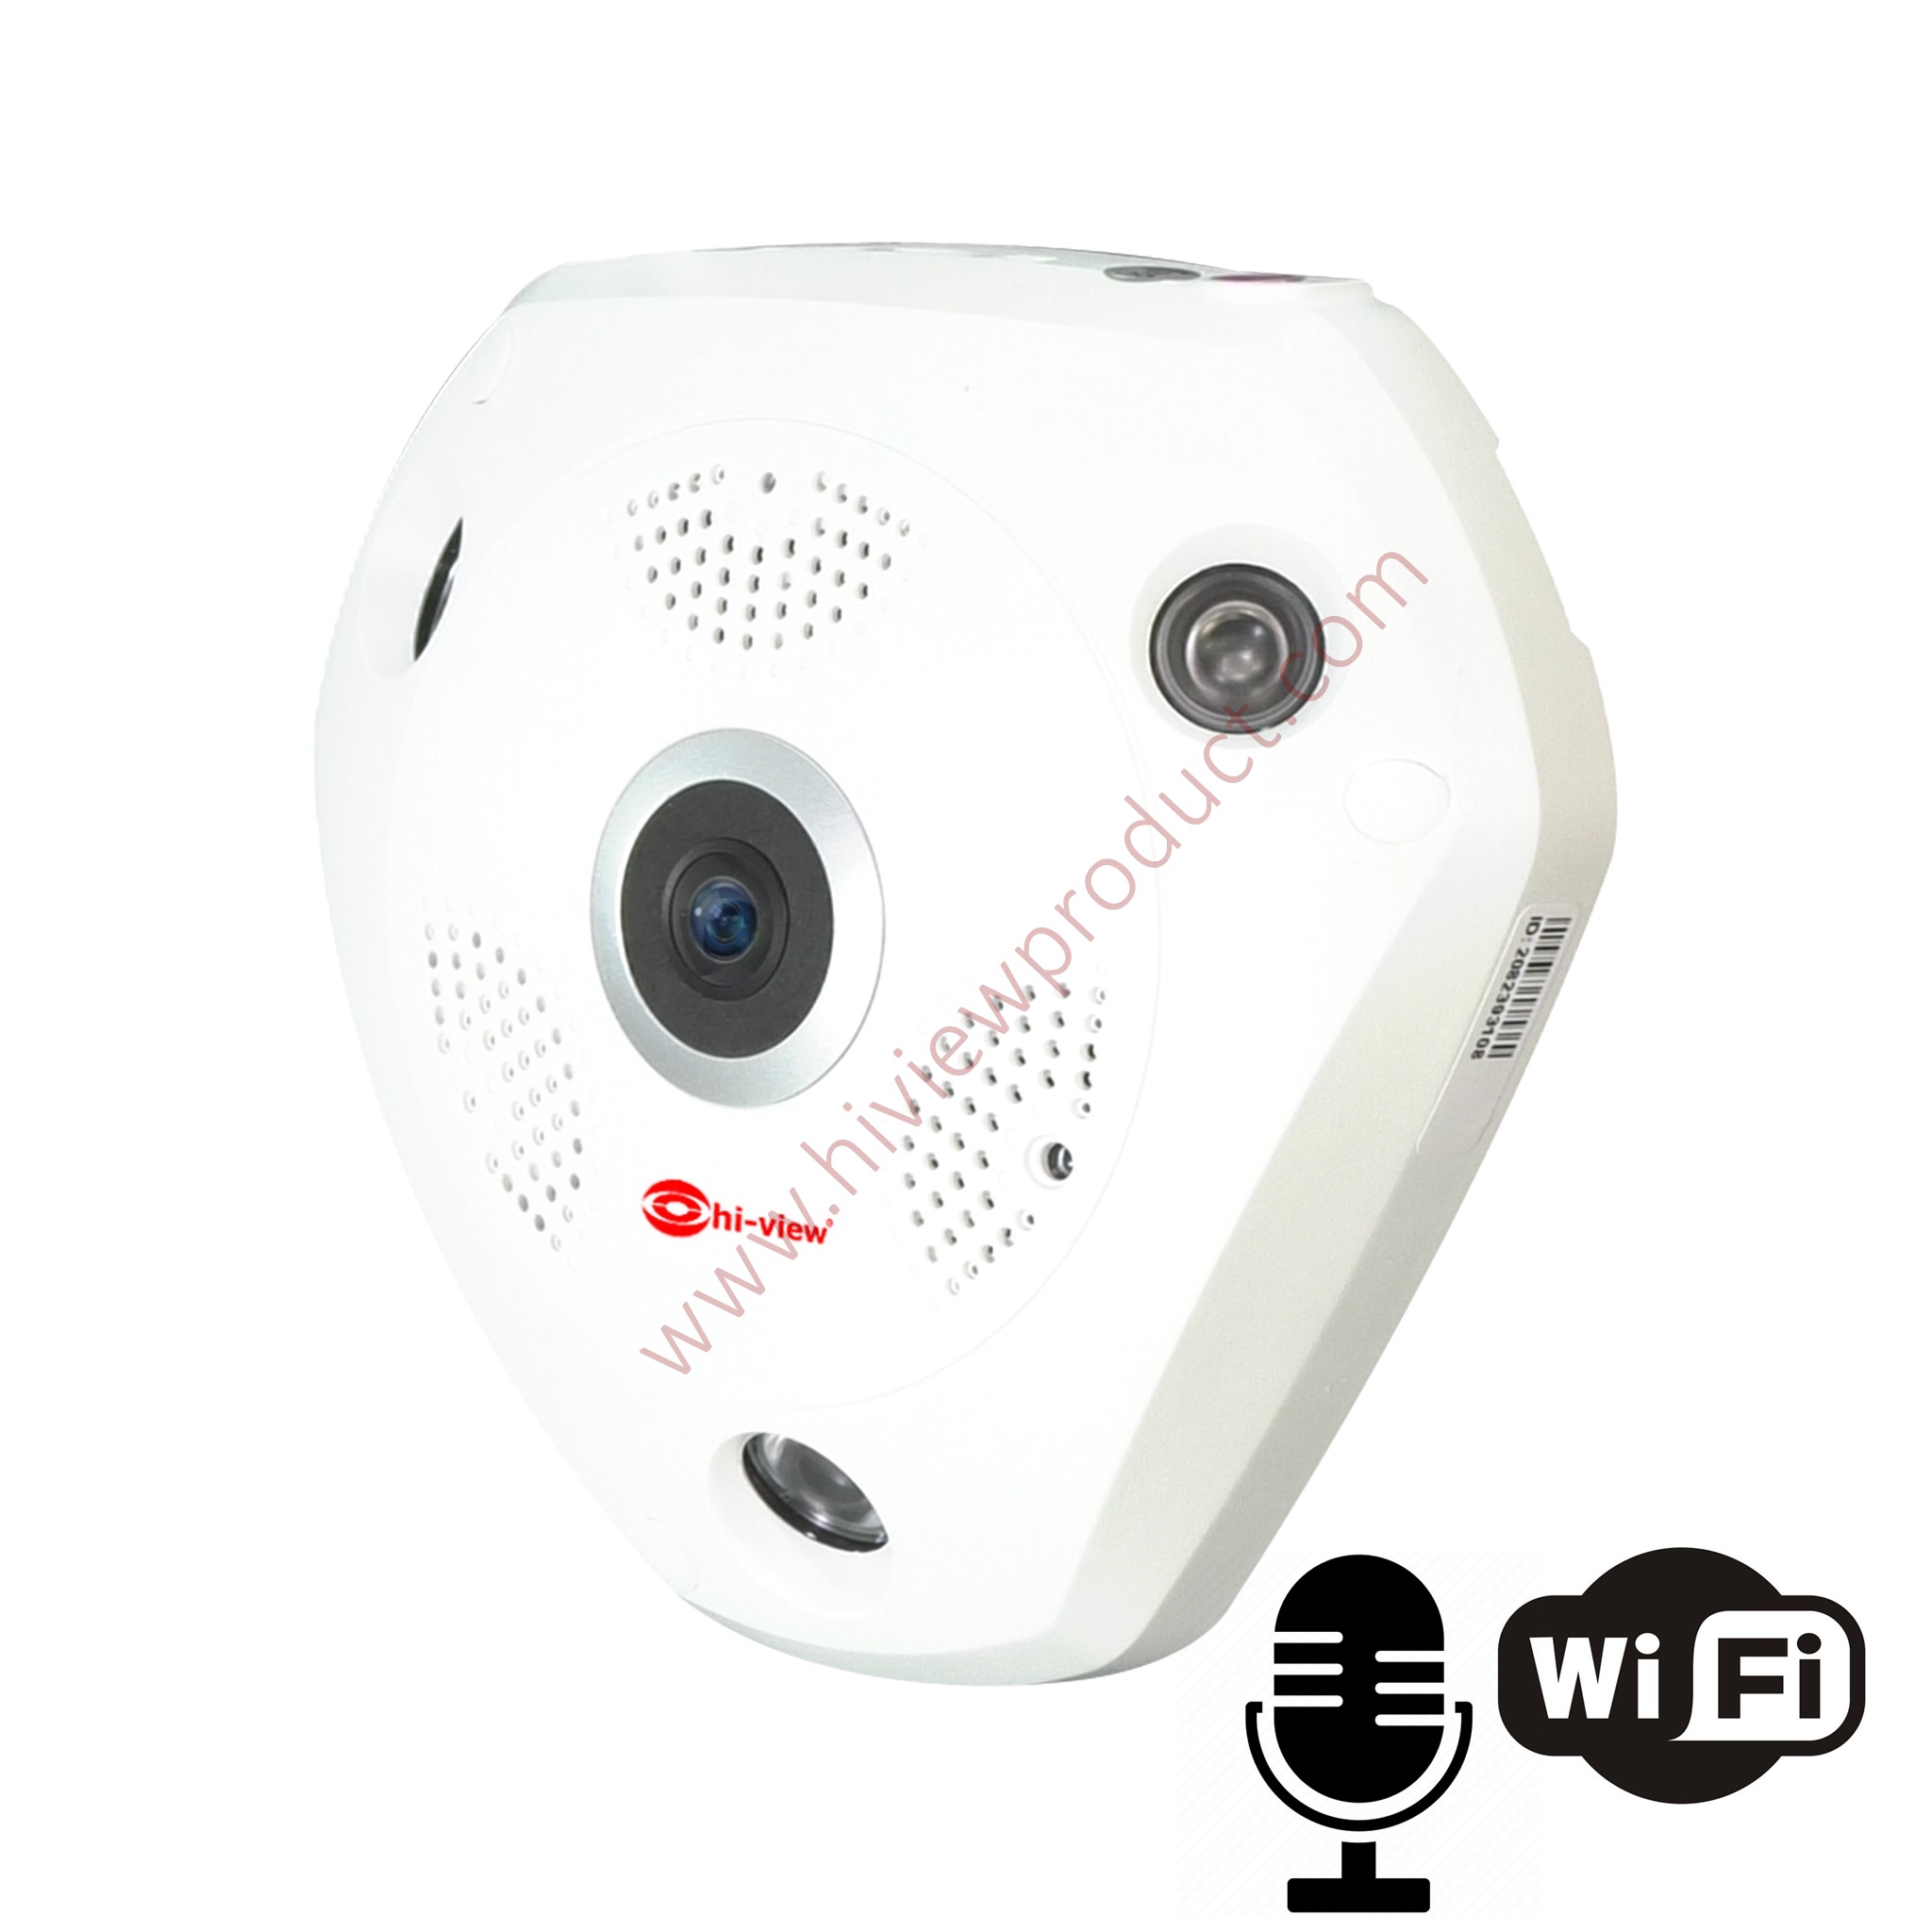 HW-33VR30-2 กล้องวงจรปิดไฮวิว 360 องศา 3 ล้านพิกเซล ใช้งานภายใน มีไมค์ในตัว พูดคุยผ่านตัวกล้องได้ Hiview VR Camera 360 ํ 3 MP Two way audio Mic and Speaker Built-in